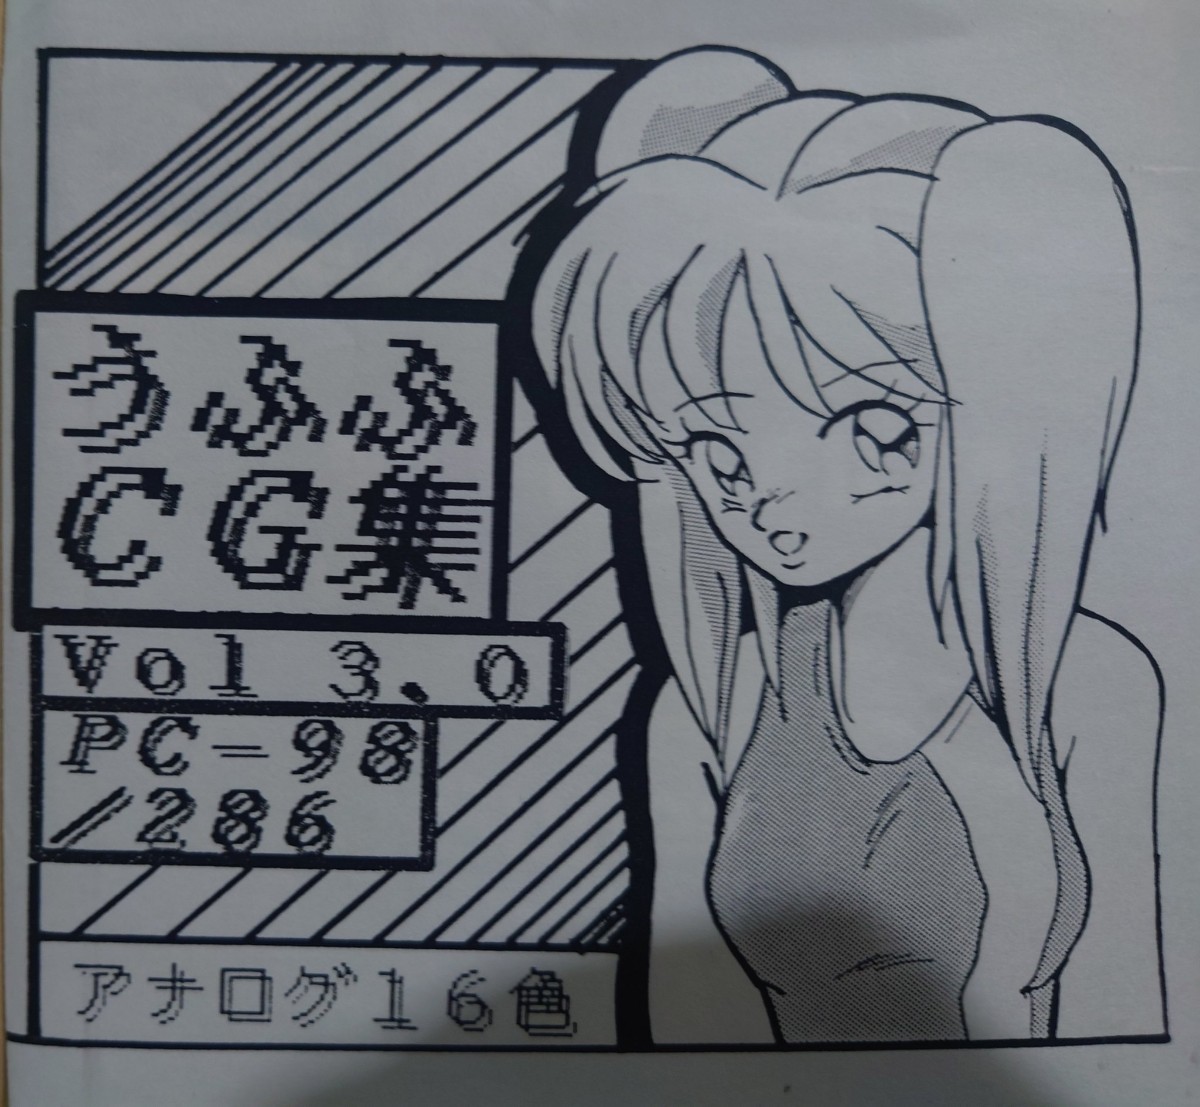 同人ソフト　うふふCG集　Vol.3.0 for PC-98/286_画像1